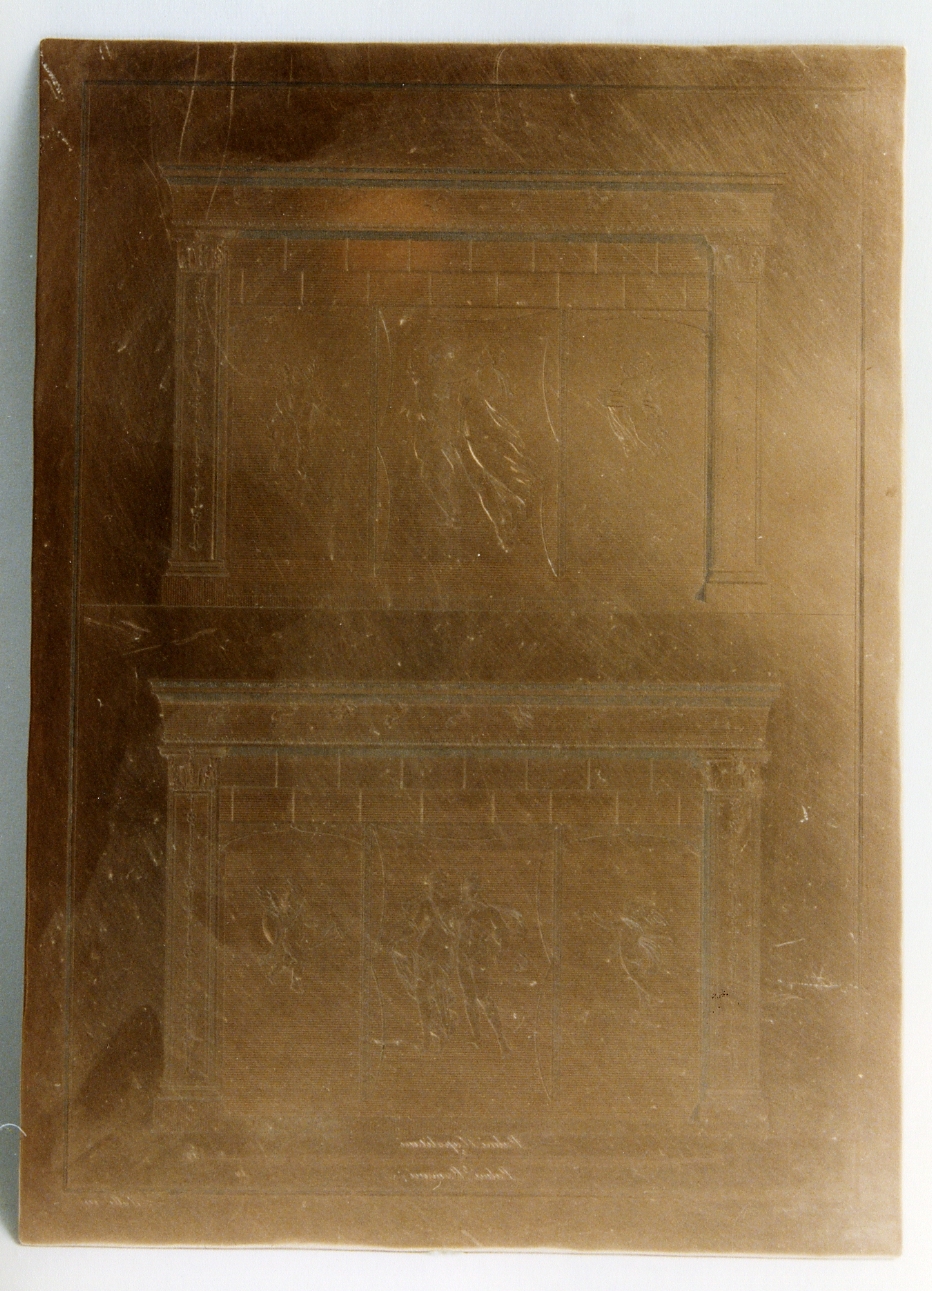 tempio di Iside: particolari architettonici e decorativi (matrice) di La Vega Francesco, Nolli Carlo (sec. XVIII)